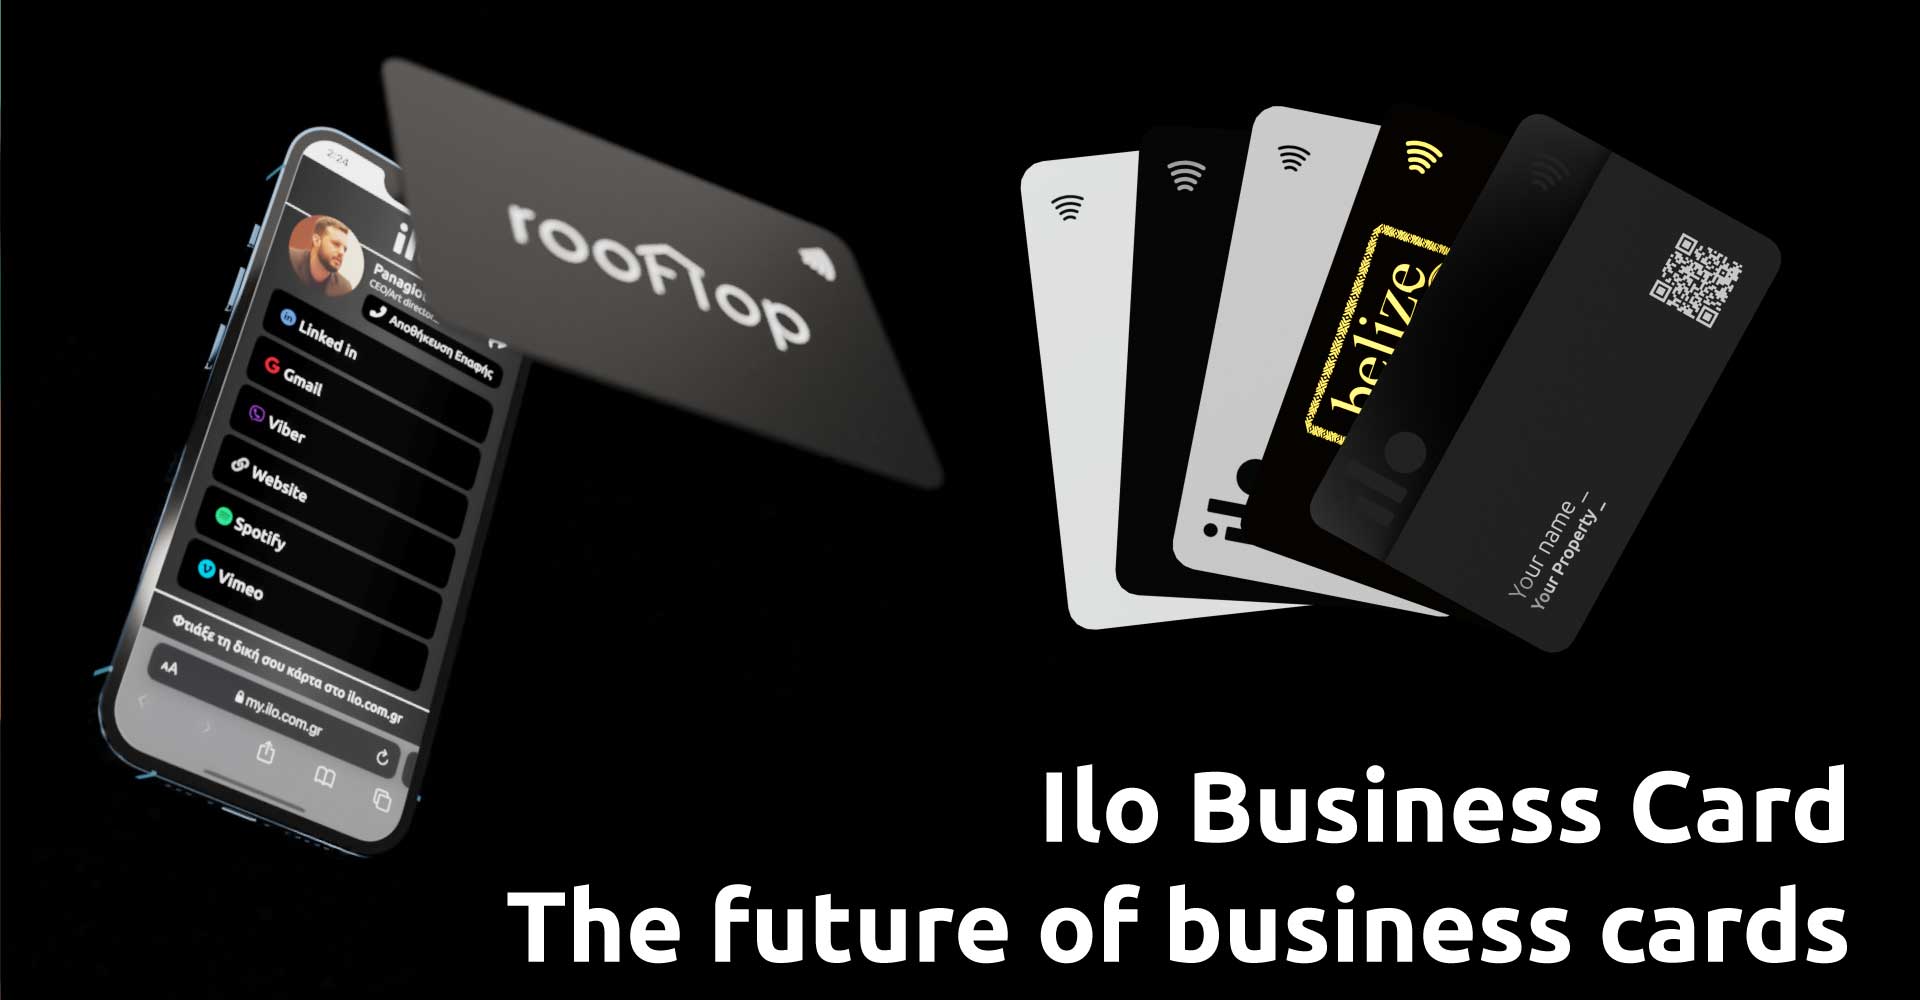 Επαγγελματική κάρτα ilo – Το μέλλον των business cards